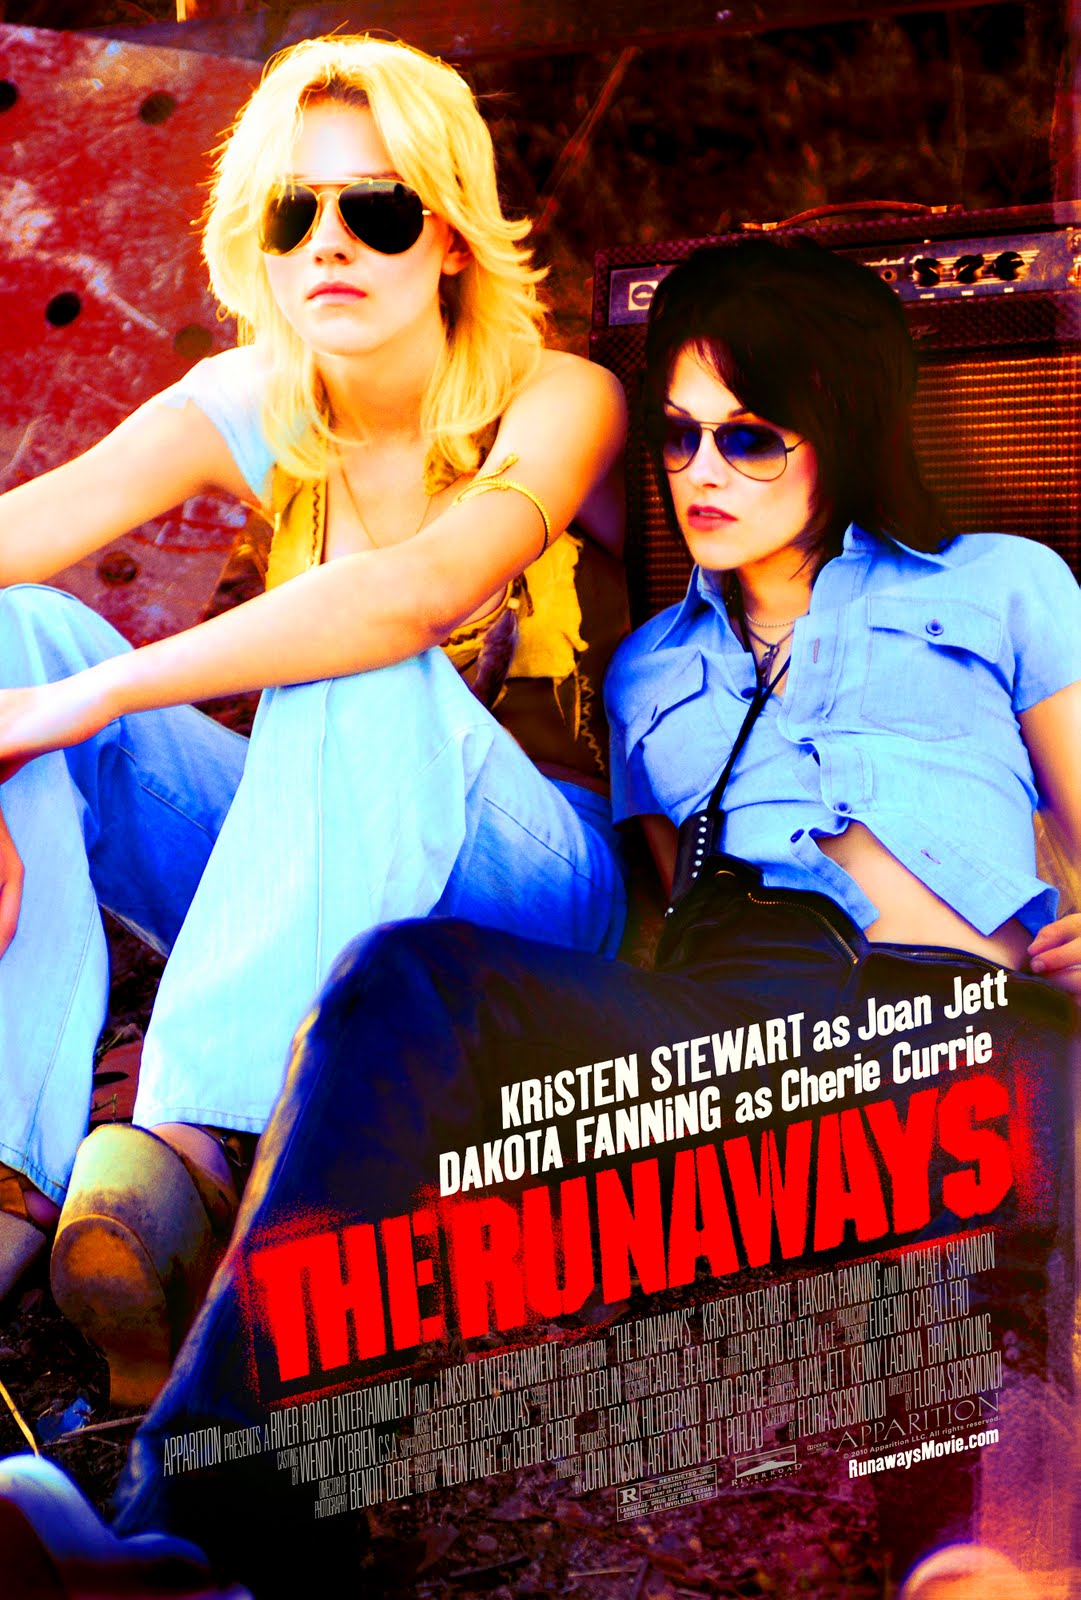 http://2.bp.blogspot.com/_iMHXEljpe8s/S_64GuFzBEI/AAAAAAAAVV4/_5ZTSx2ra4g/s1600/the-runaways-2010-movie-poster.jpg